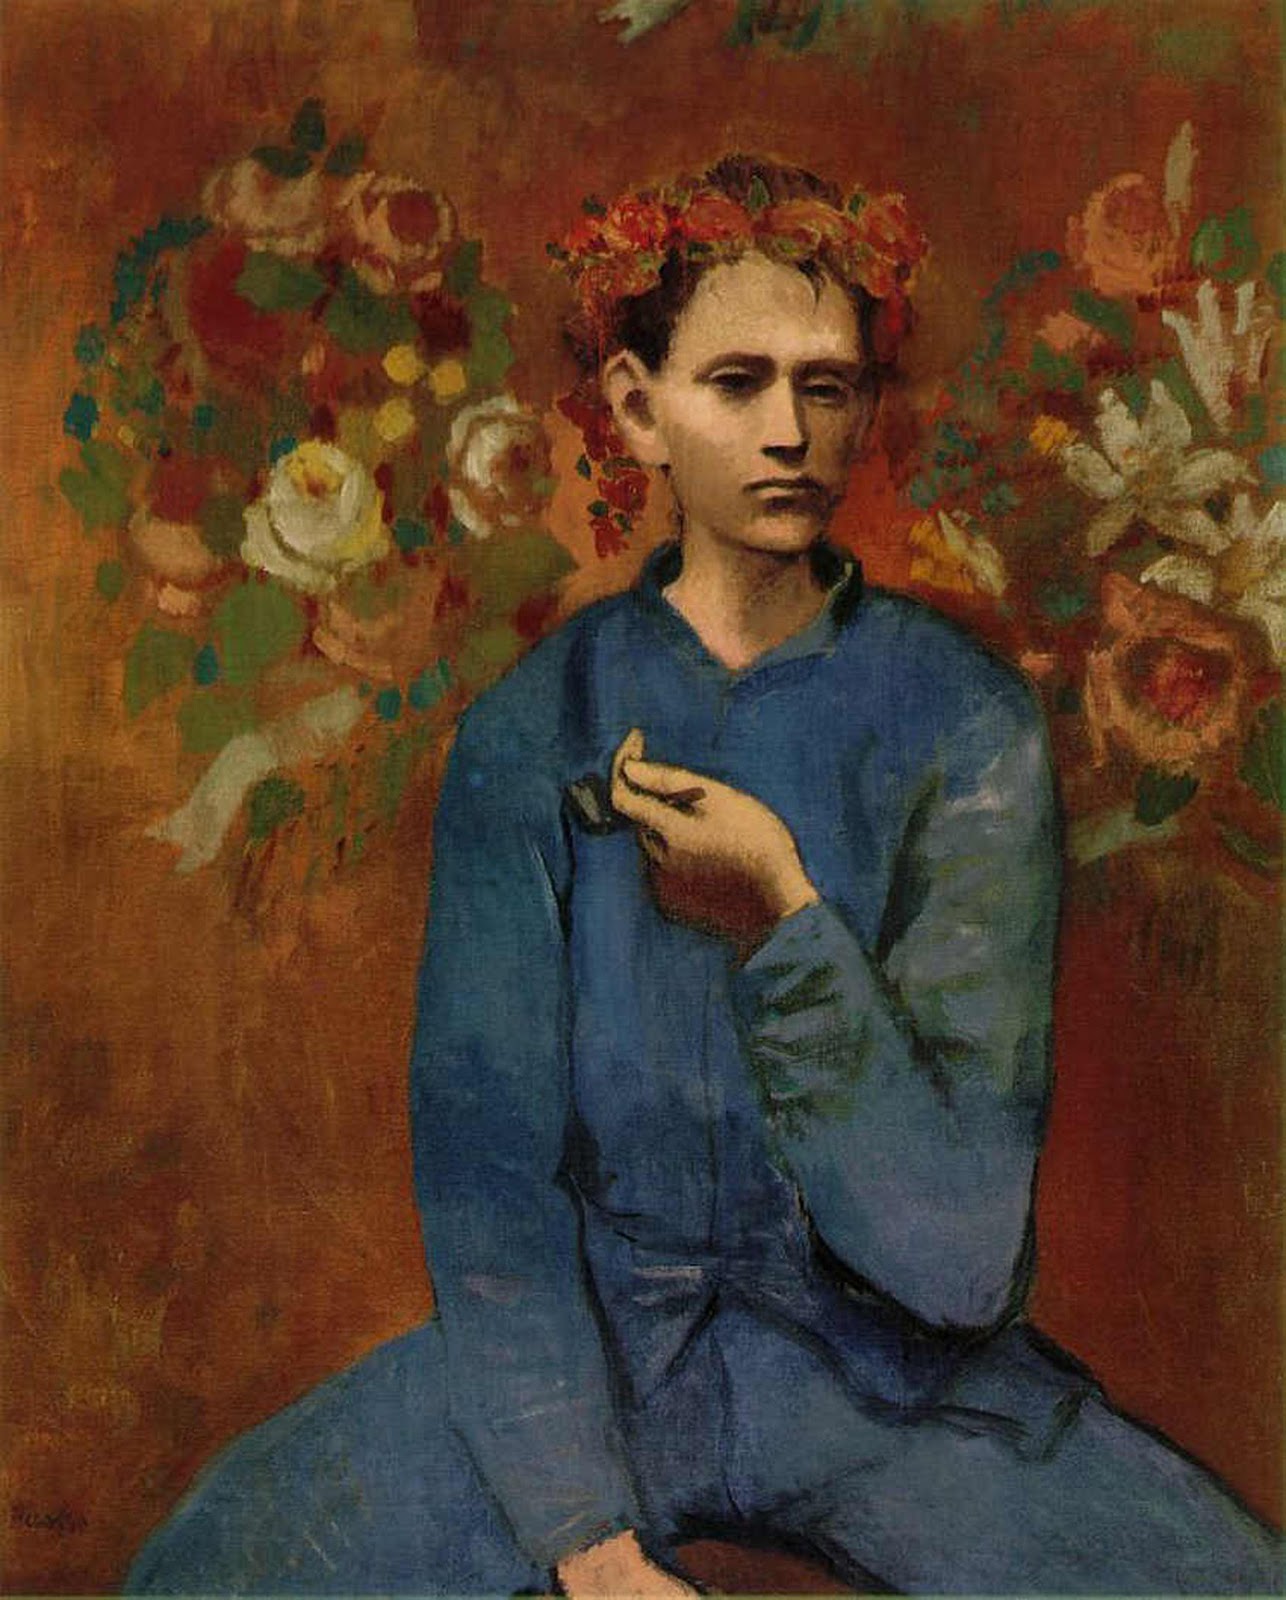 Мальчик с трубкой by Pablo Picasso - 1905 - 100 × 81,3 см 